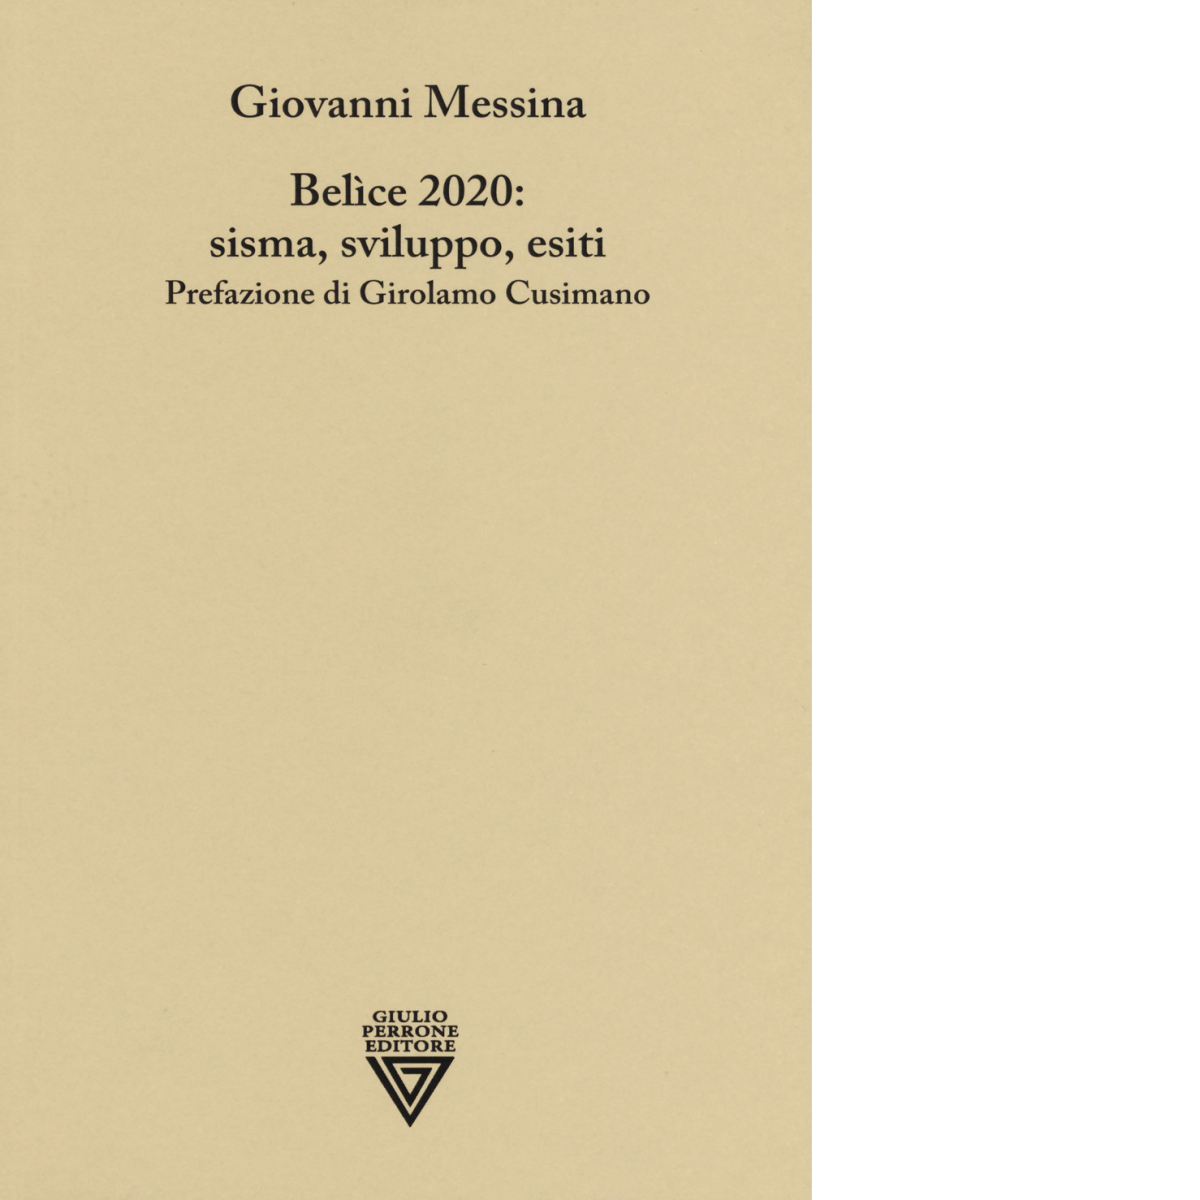 Belice 2020: sisma, sviluppo, esiti di Giovanni Messina - Perrone editore, 2019